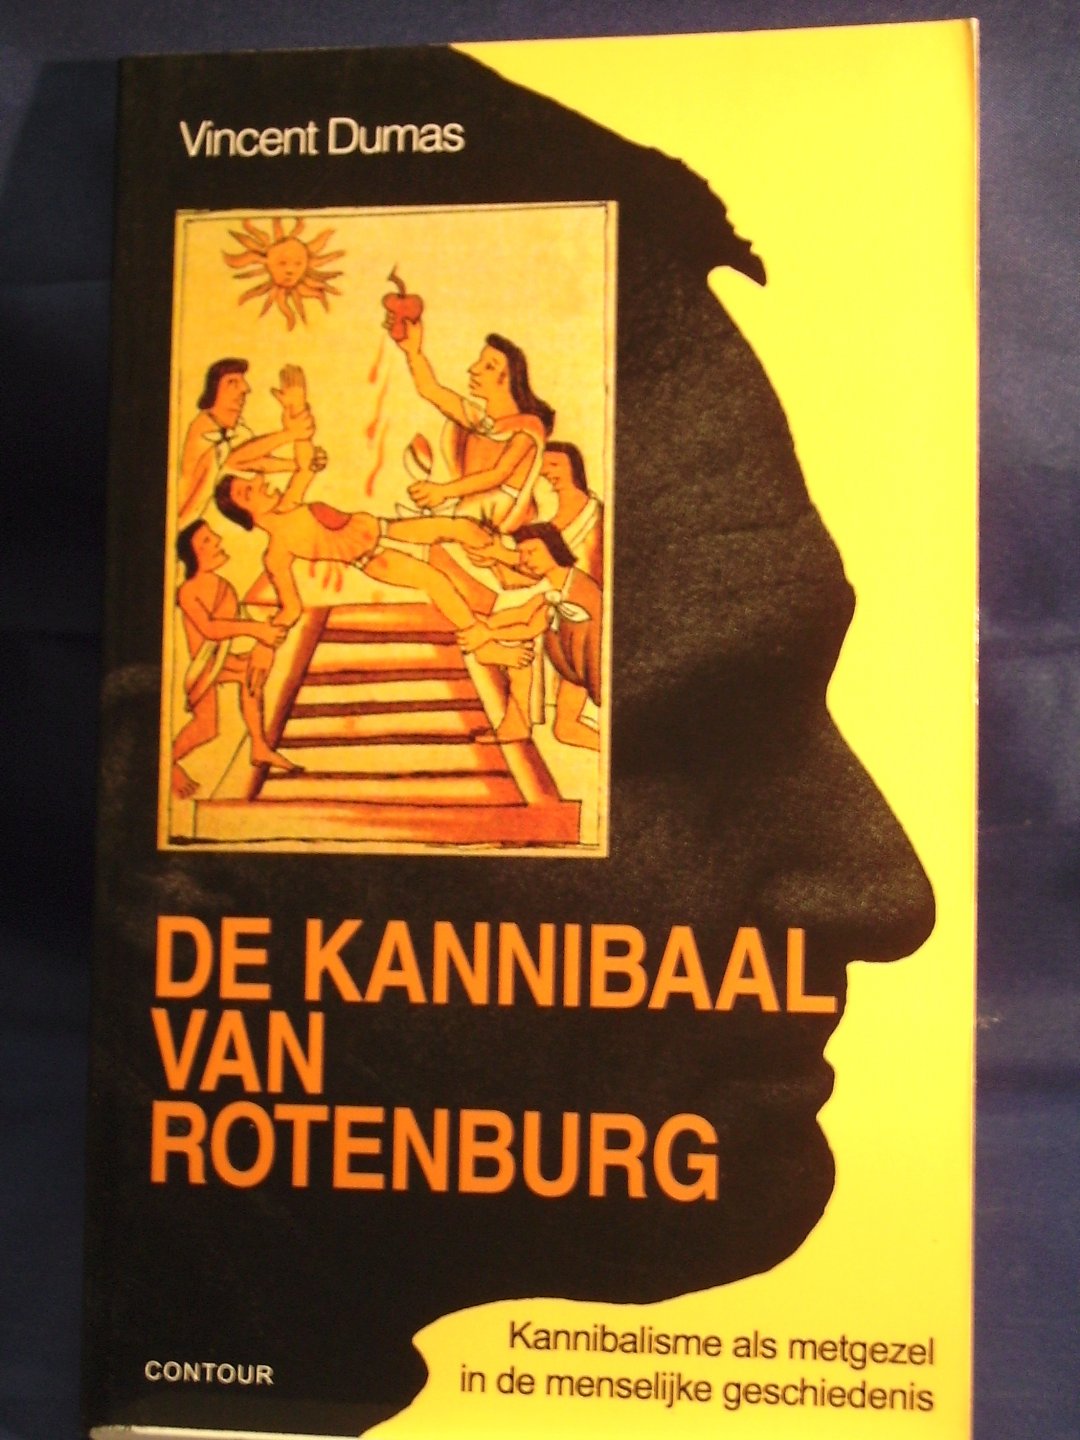 Dumas, Vincent - De kannibaal van Rotenburg / kannibalisme als metgezel in de menselijke geschiedenis